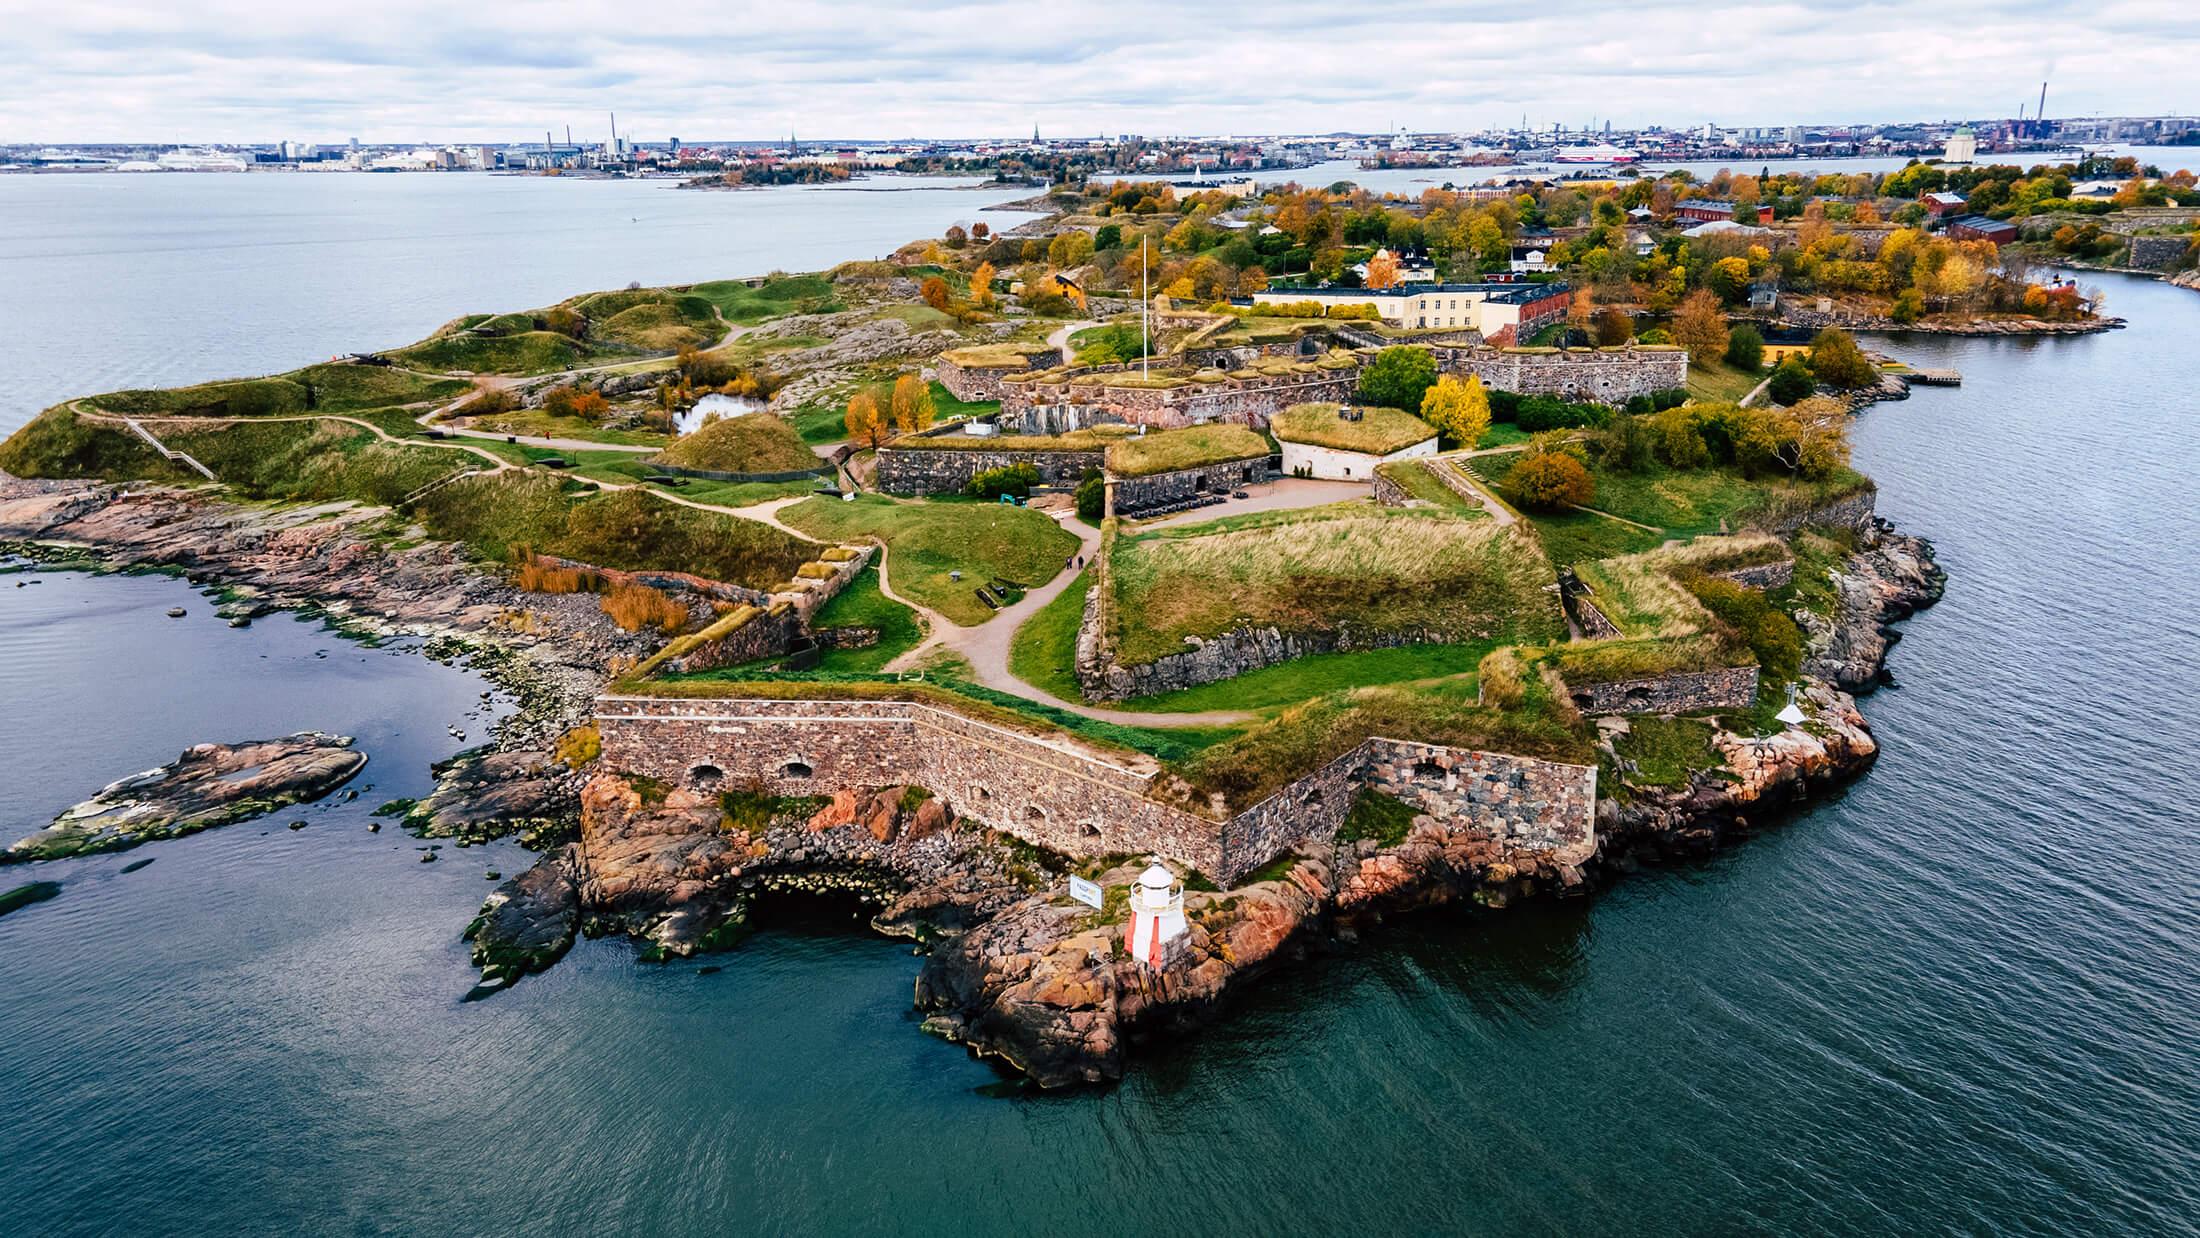 Suomenlinna fortress in Helsinki, Finland